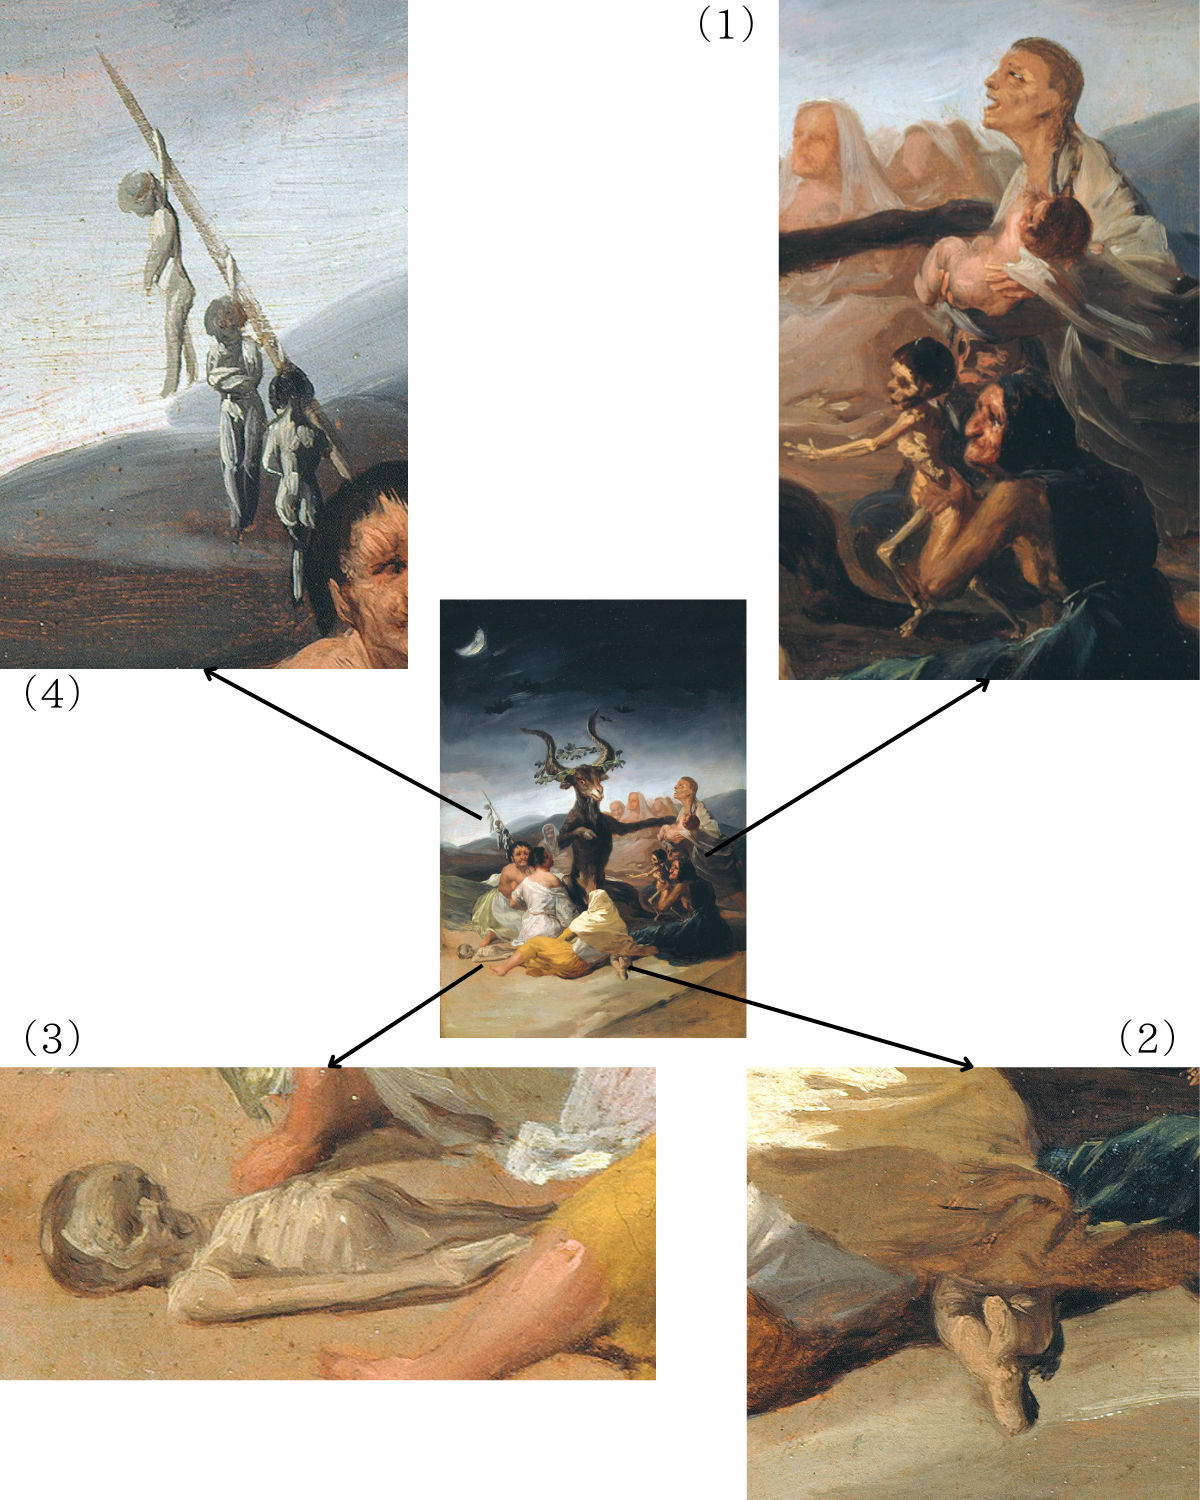 （1）丸々と太った赤子を抱く魔女と、骨と皮ばかりの赤子を掲げている老婆（2）ショールの下から覗く赤子の両脚（3）死体と思われる赤子（4）子供もしくは人形を吊り下げた棒